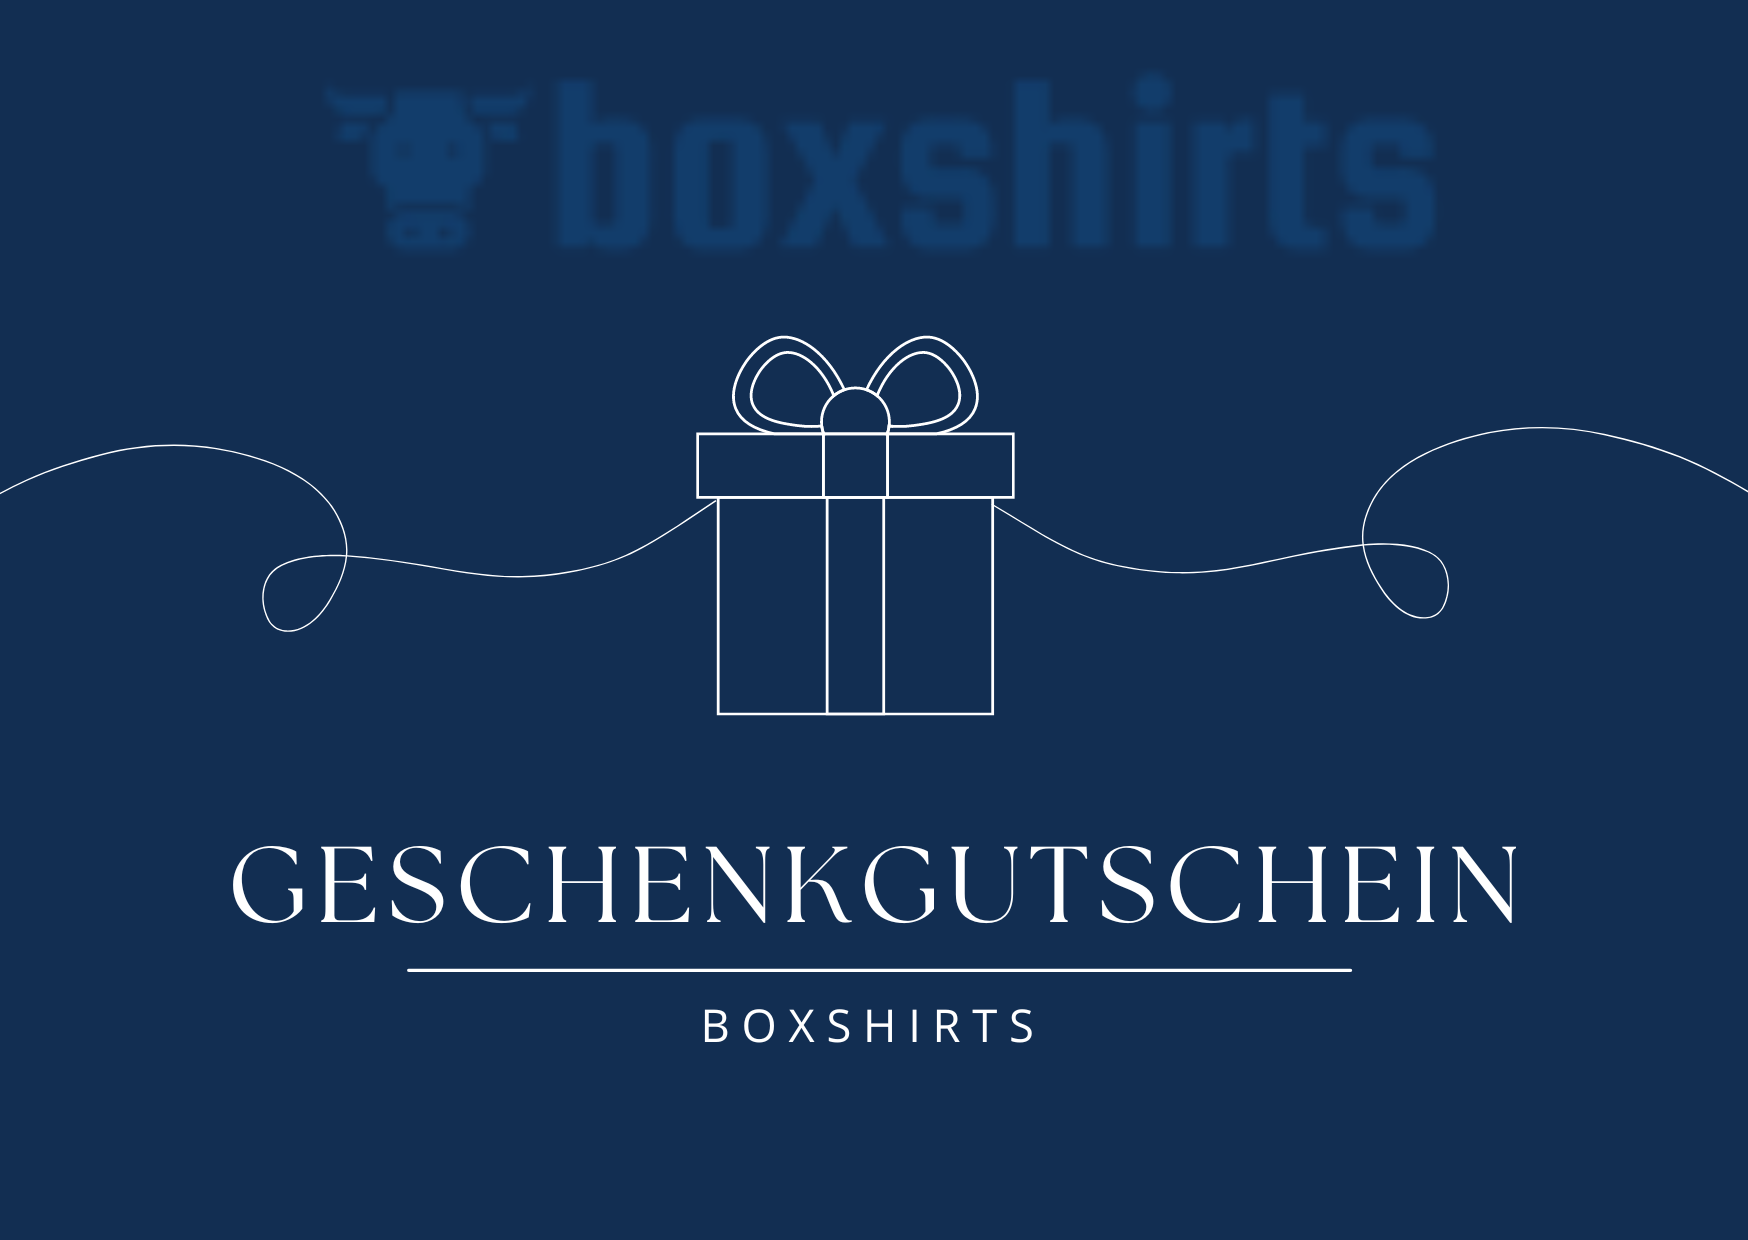 boxshirts - Geschenkgutschein